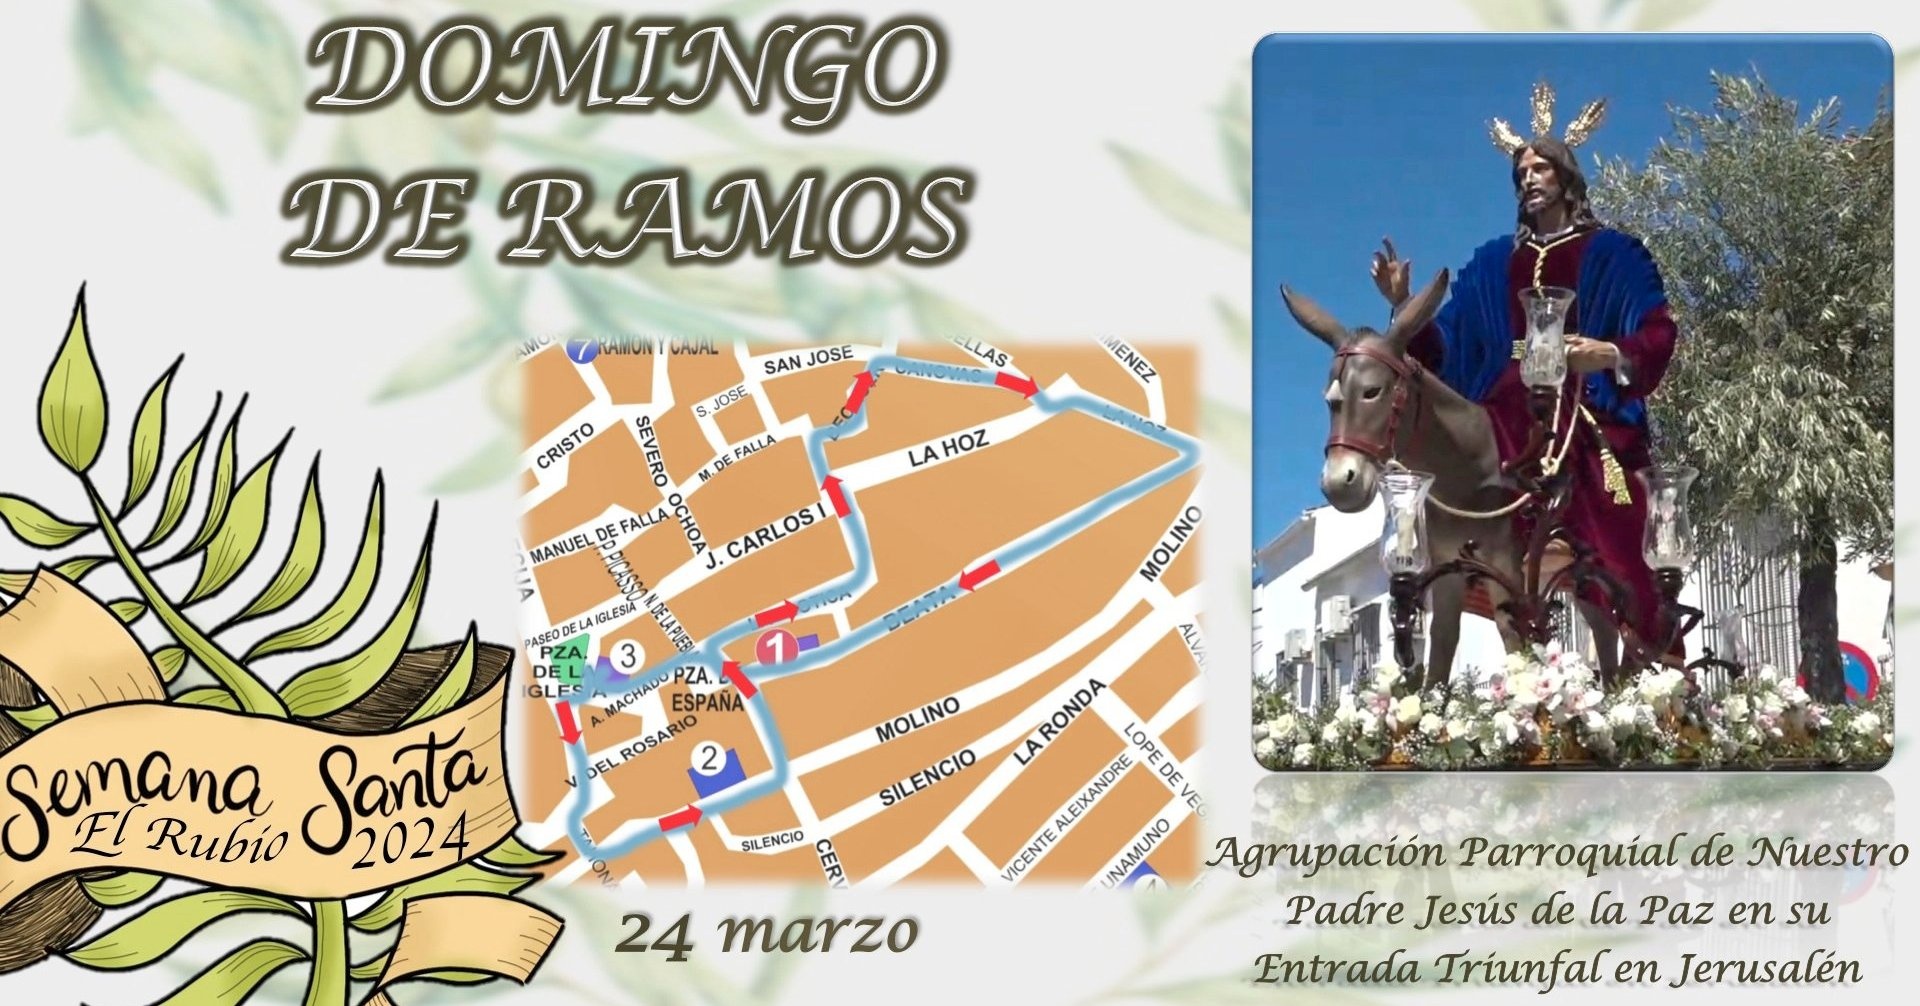 2.-DOMINGO DE RAMOS